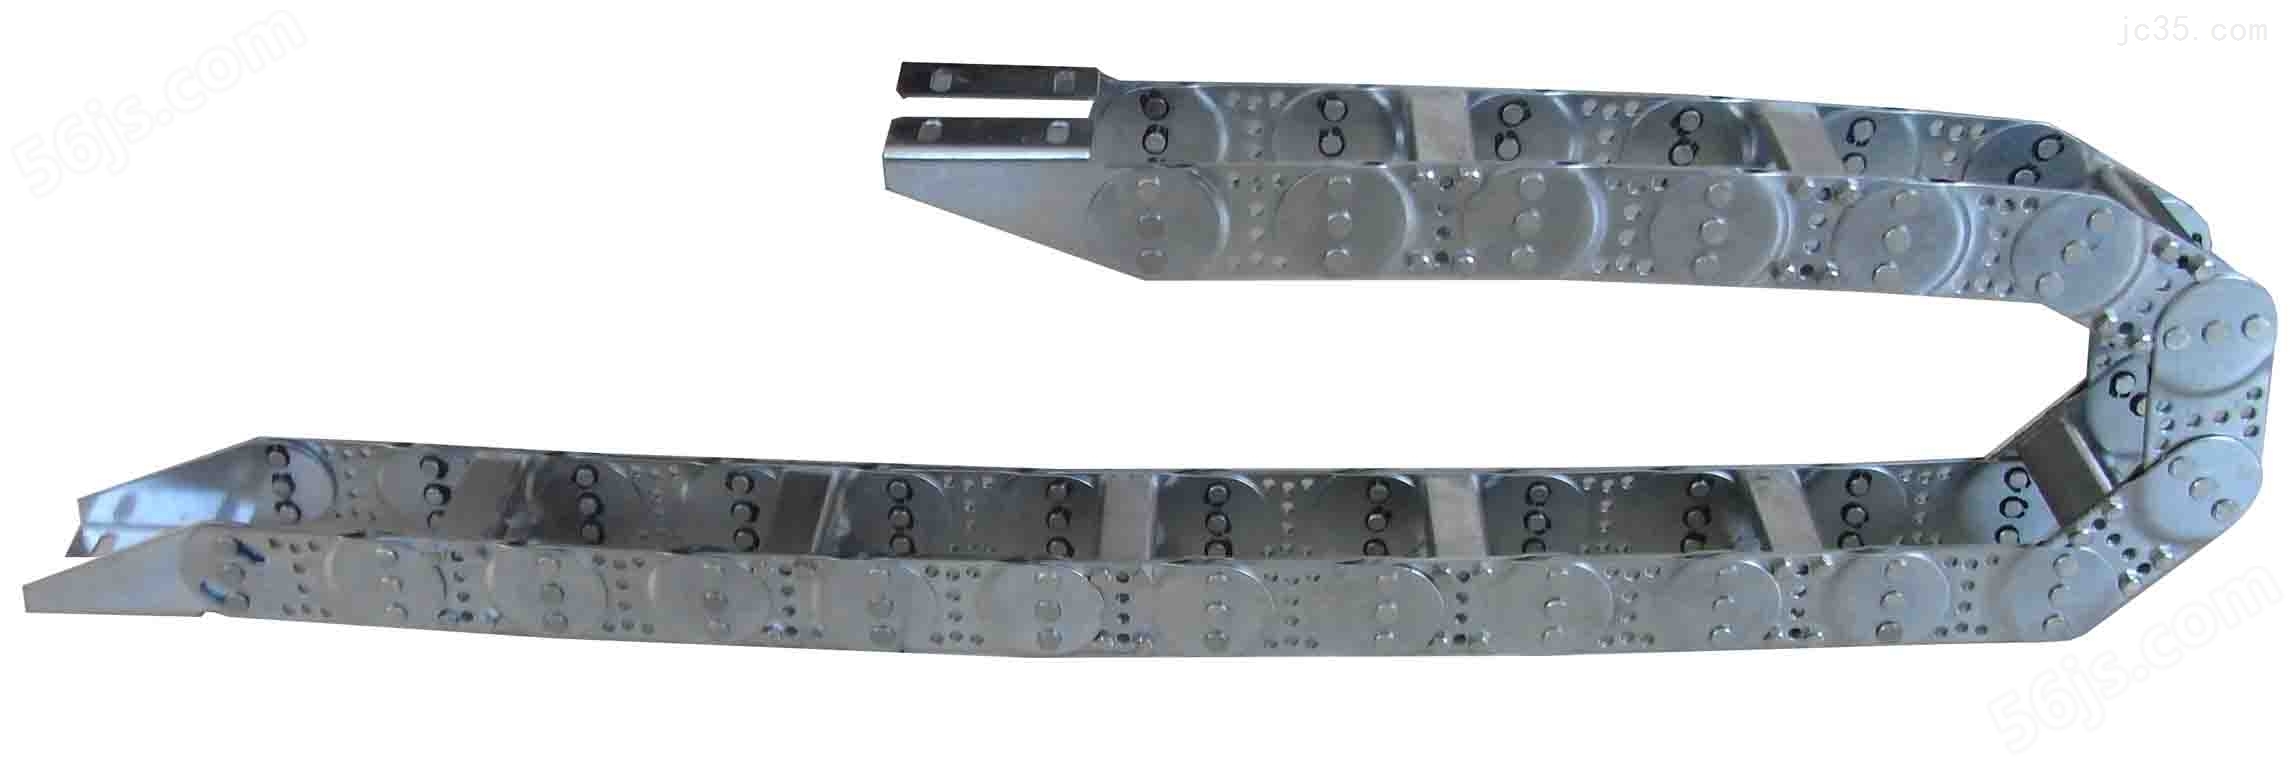 桥式钢铝拖链生产